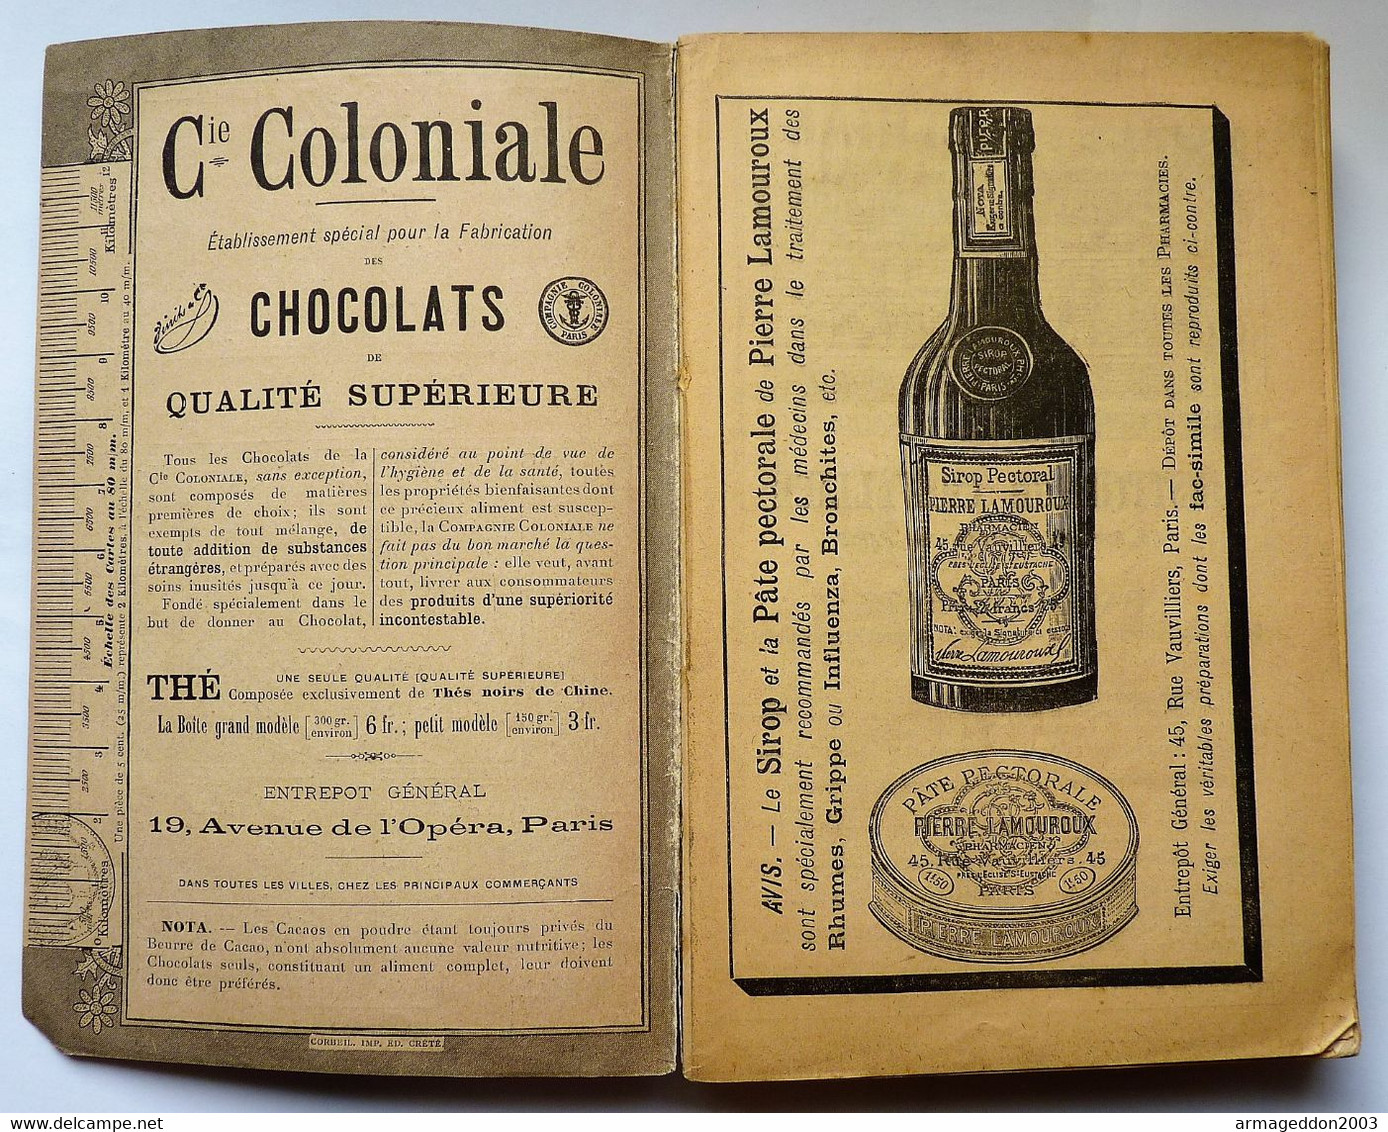 ALMANACH HACHETTE 1897 - PETITE ENCYCLOPEDIE POPULAIRE DE LA VIE PRATIQUE Be - Encyclopaedia